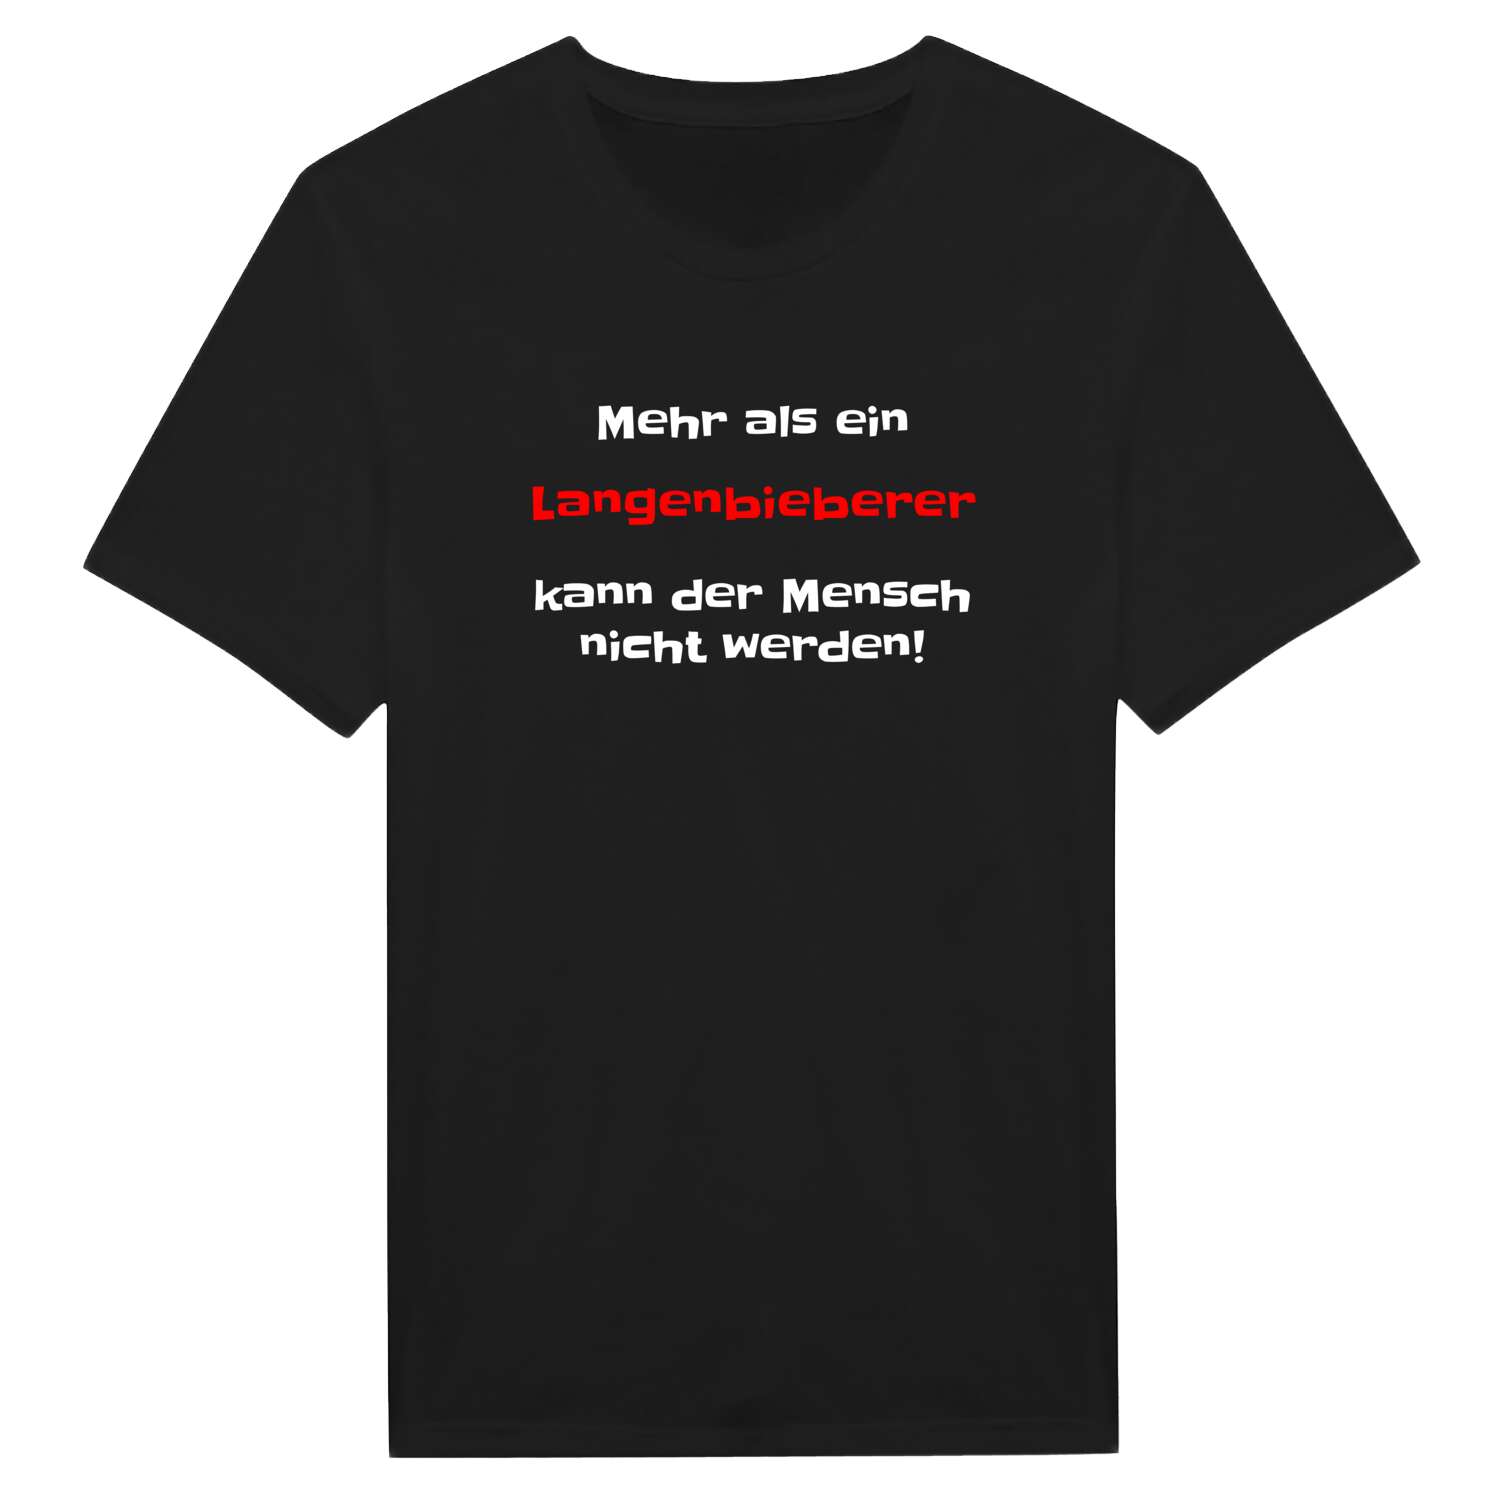 Langenbieber T-Shirt »Mehr als ein«